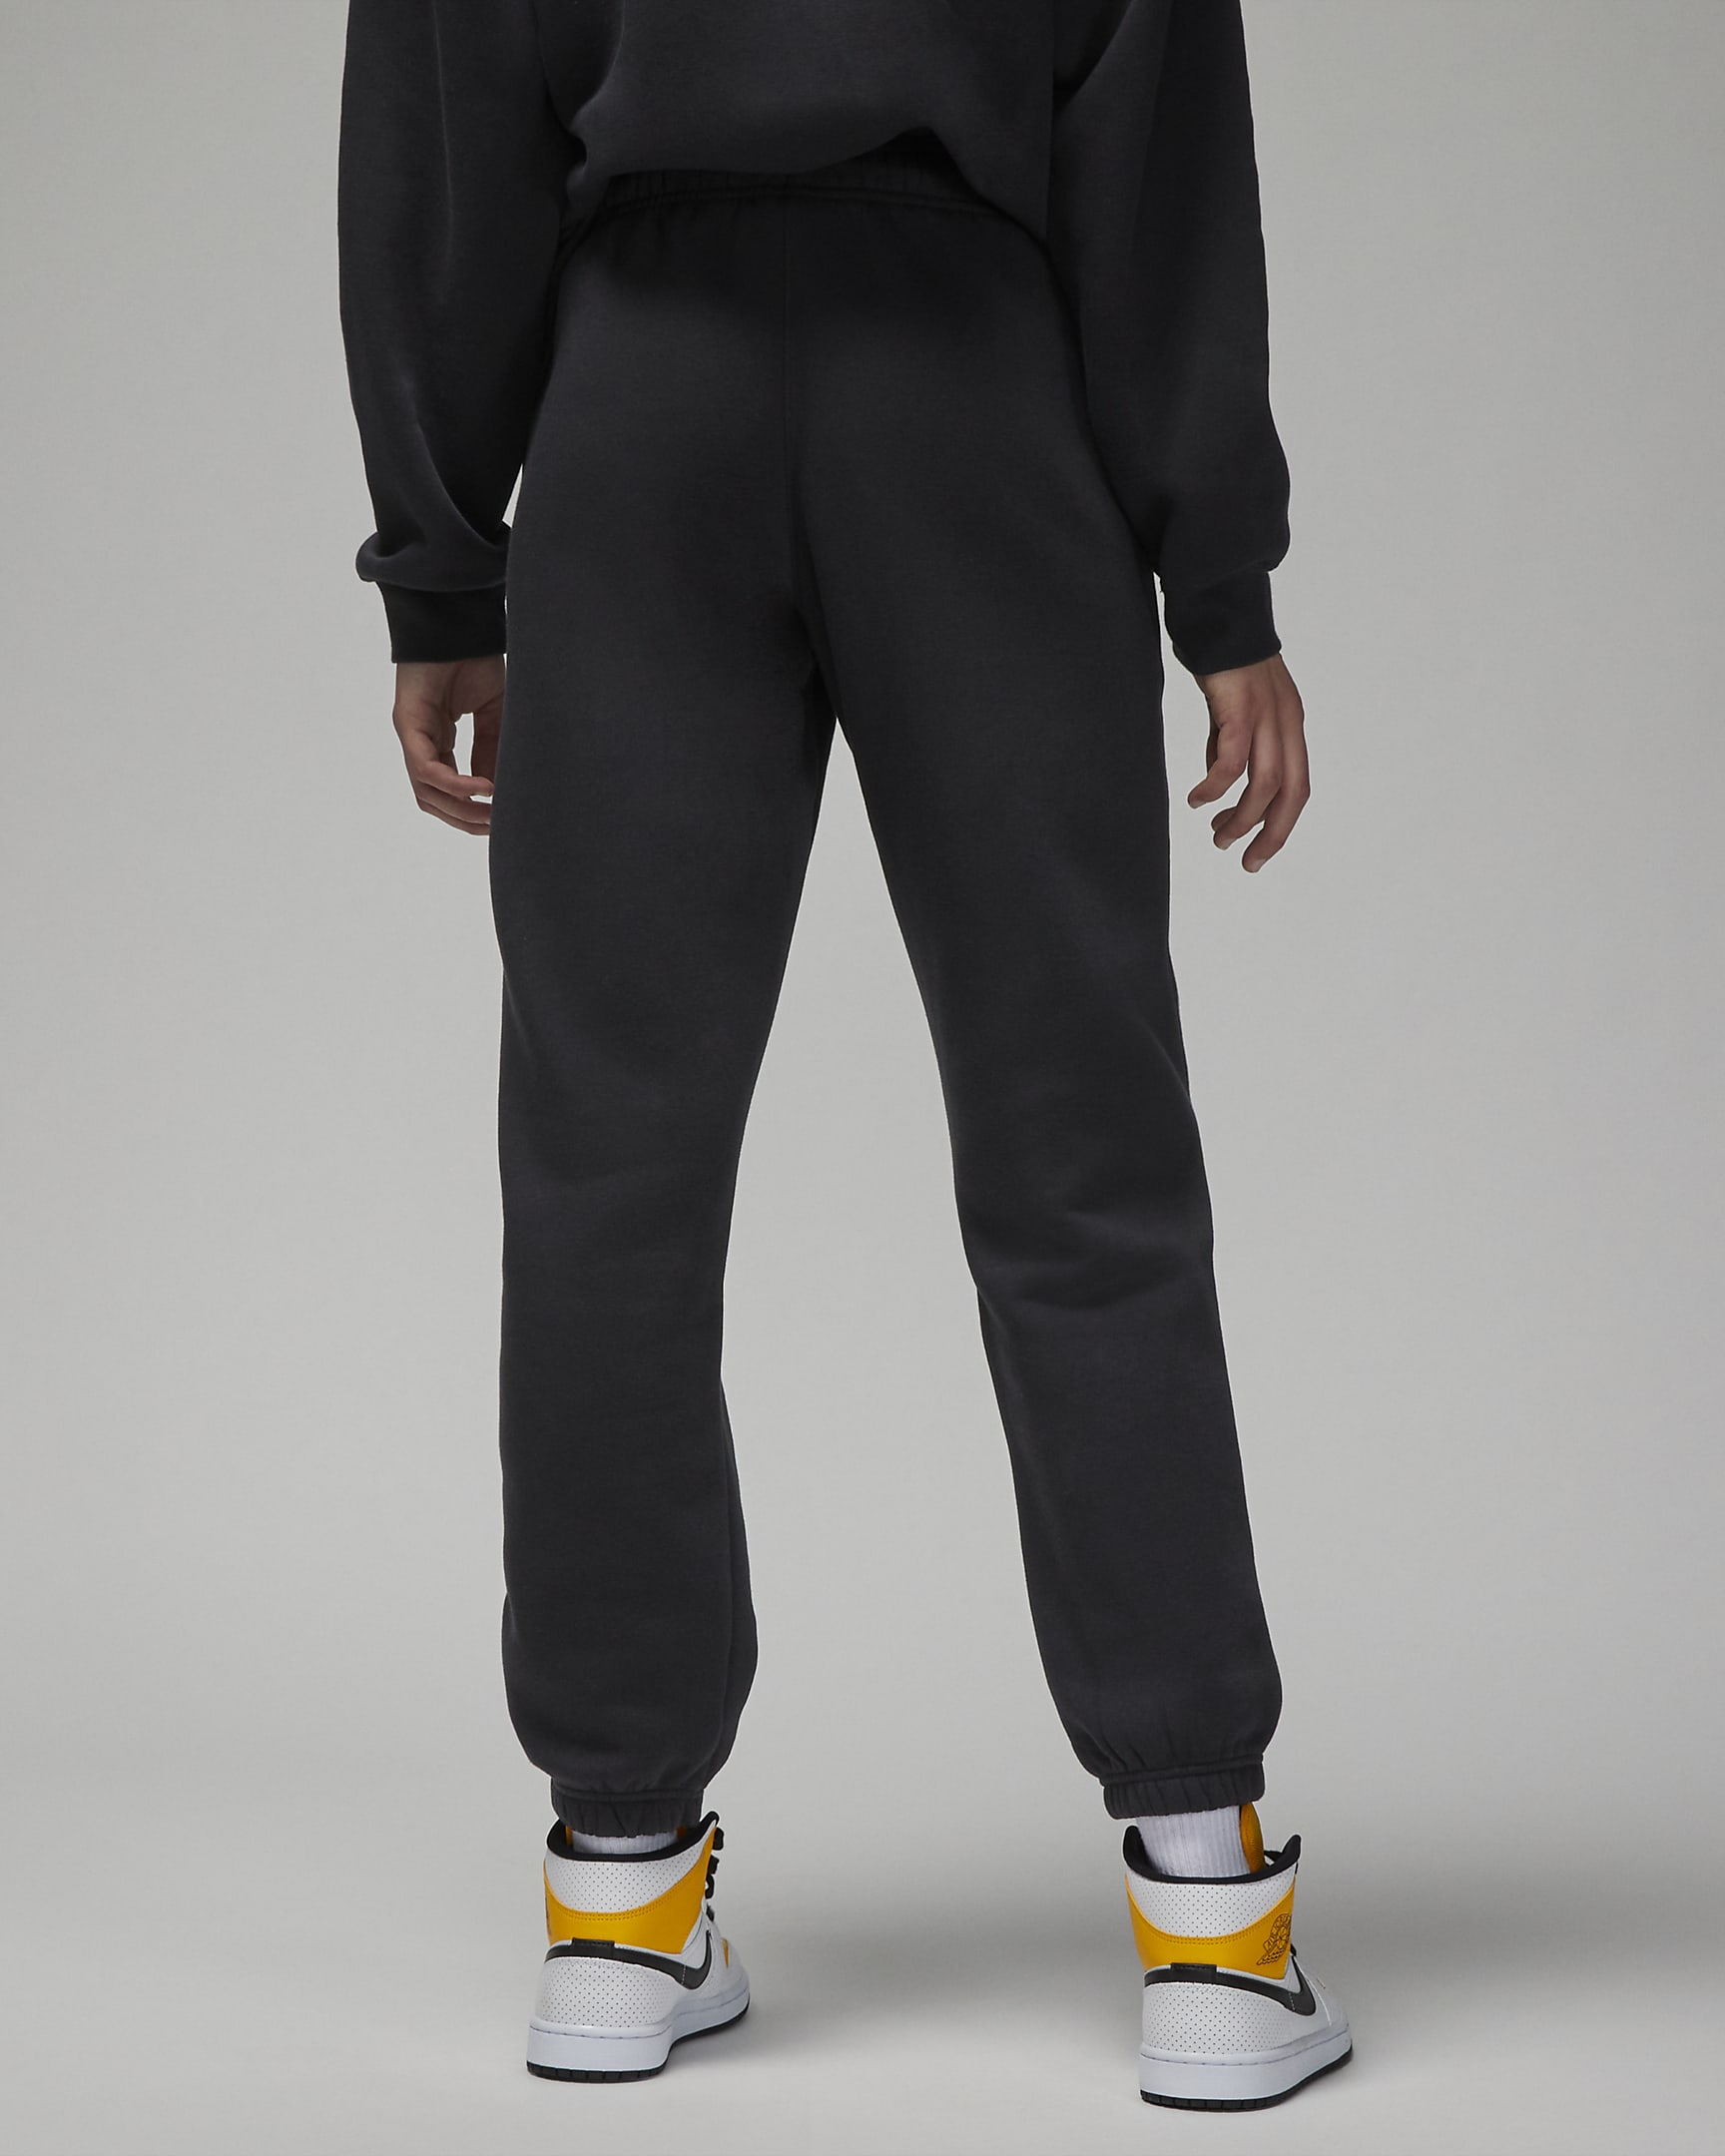 Pants de tejido Fleece para mujer Jordan Brooklyn. Nike.com